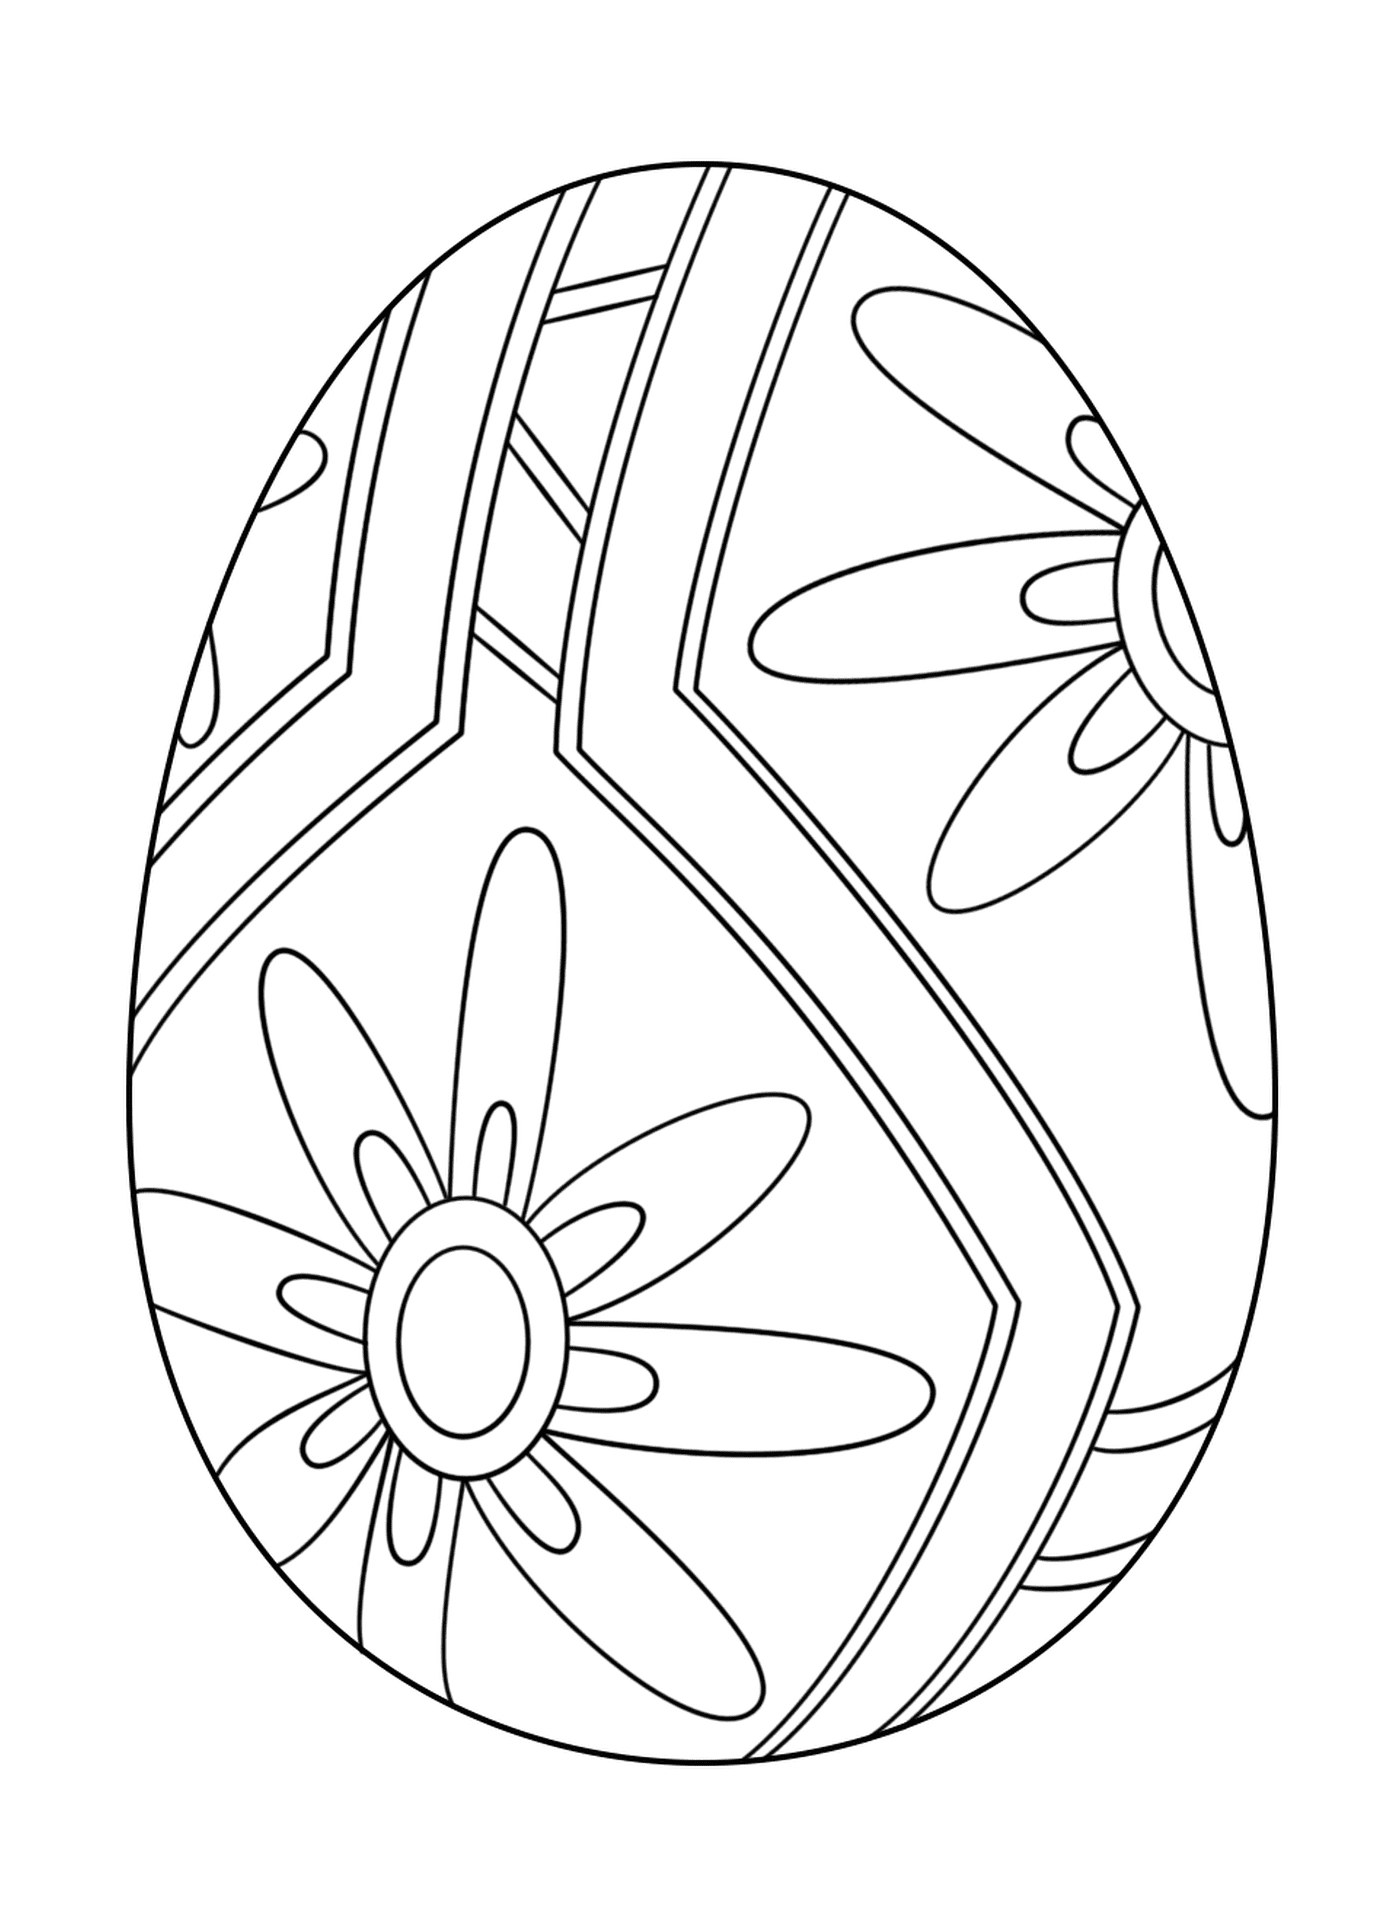   Oeuf de Pâques avec motif floral 1 